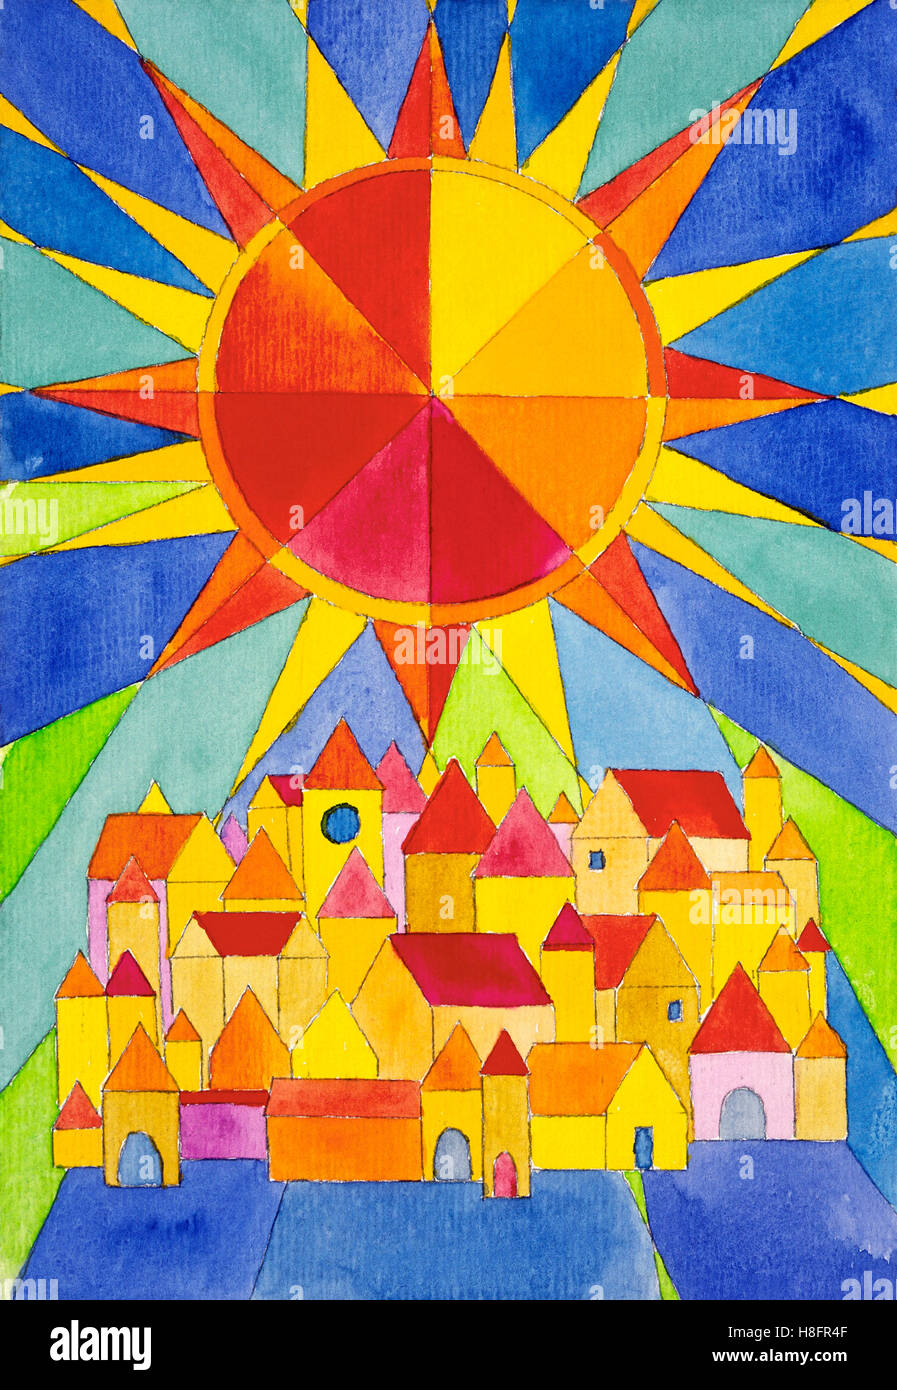 Aquarell von Heidrun Füssenhäuser, große helle Stern über der Stadt, Häuser, rot, gelb, blau Stockfoto